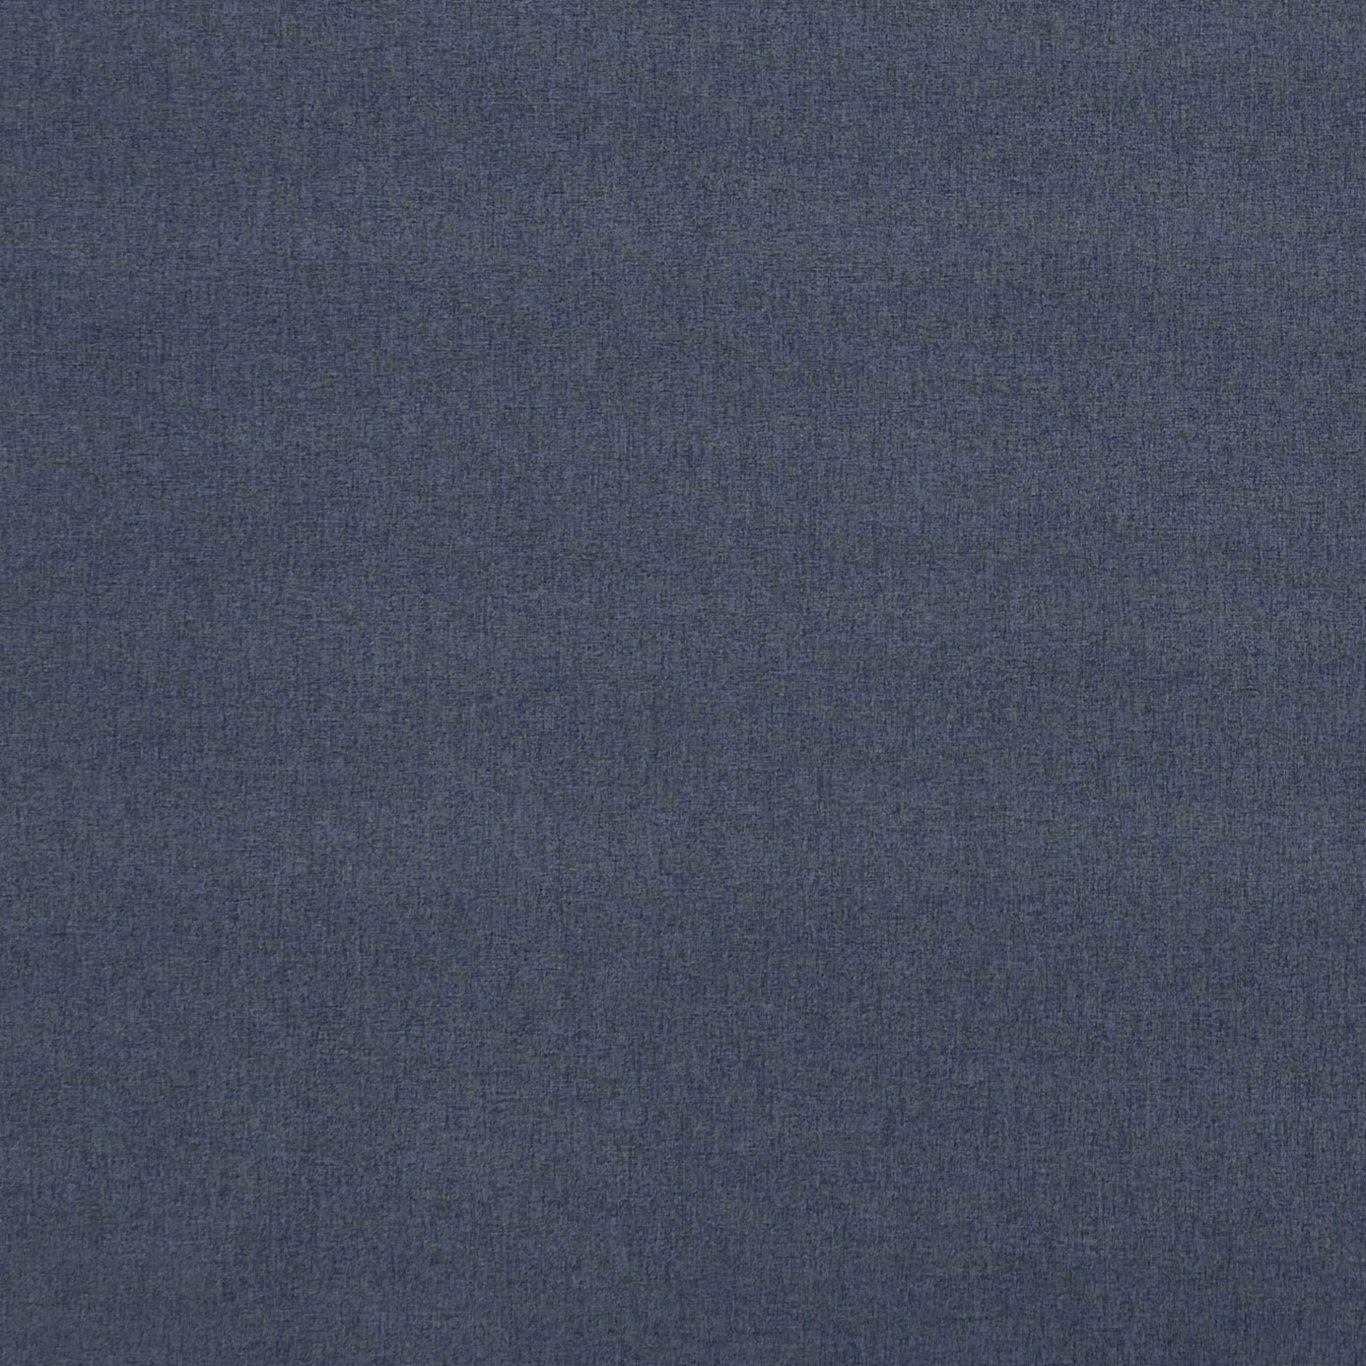 Highlander Damson Fabric by CNC